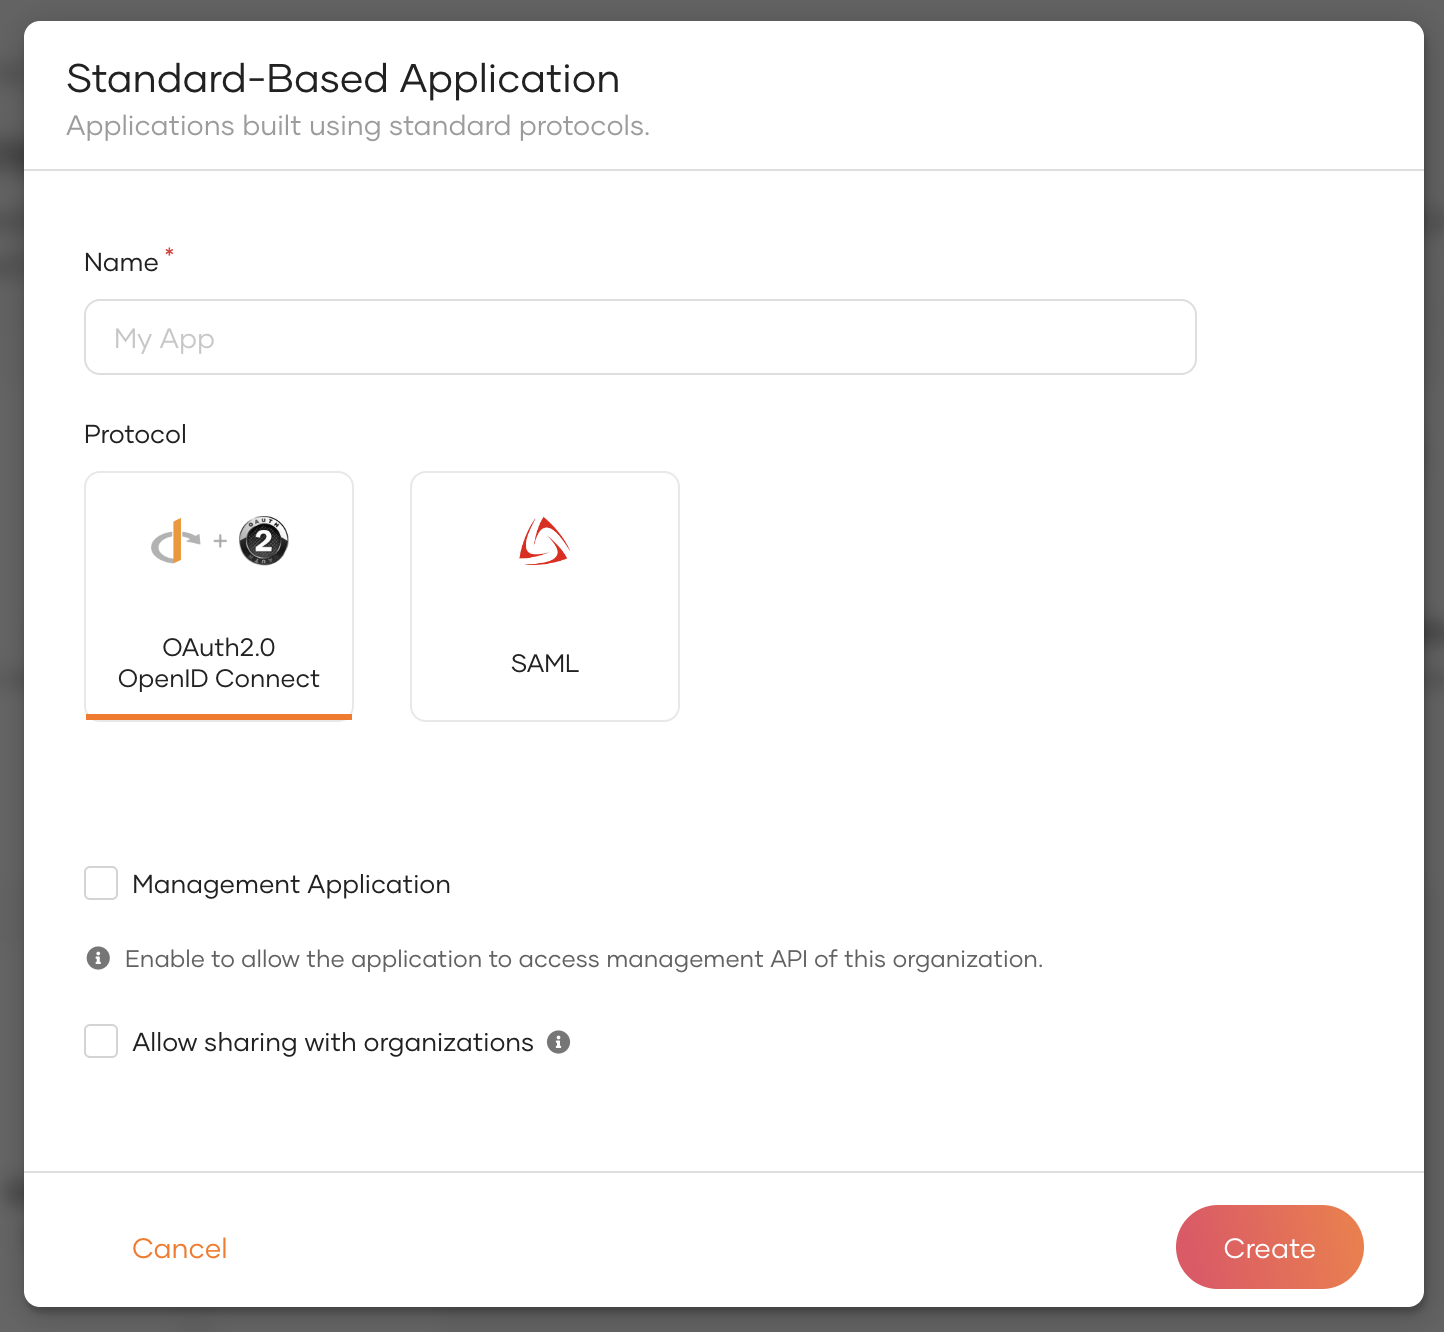 Register a standard based application